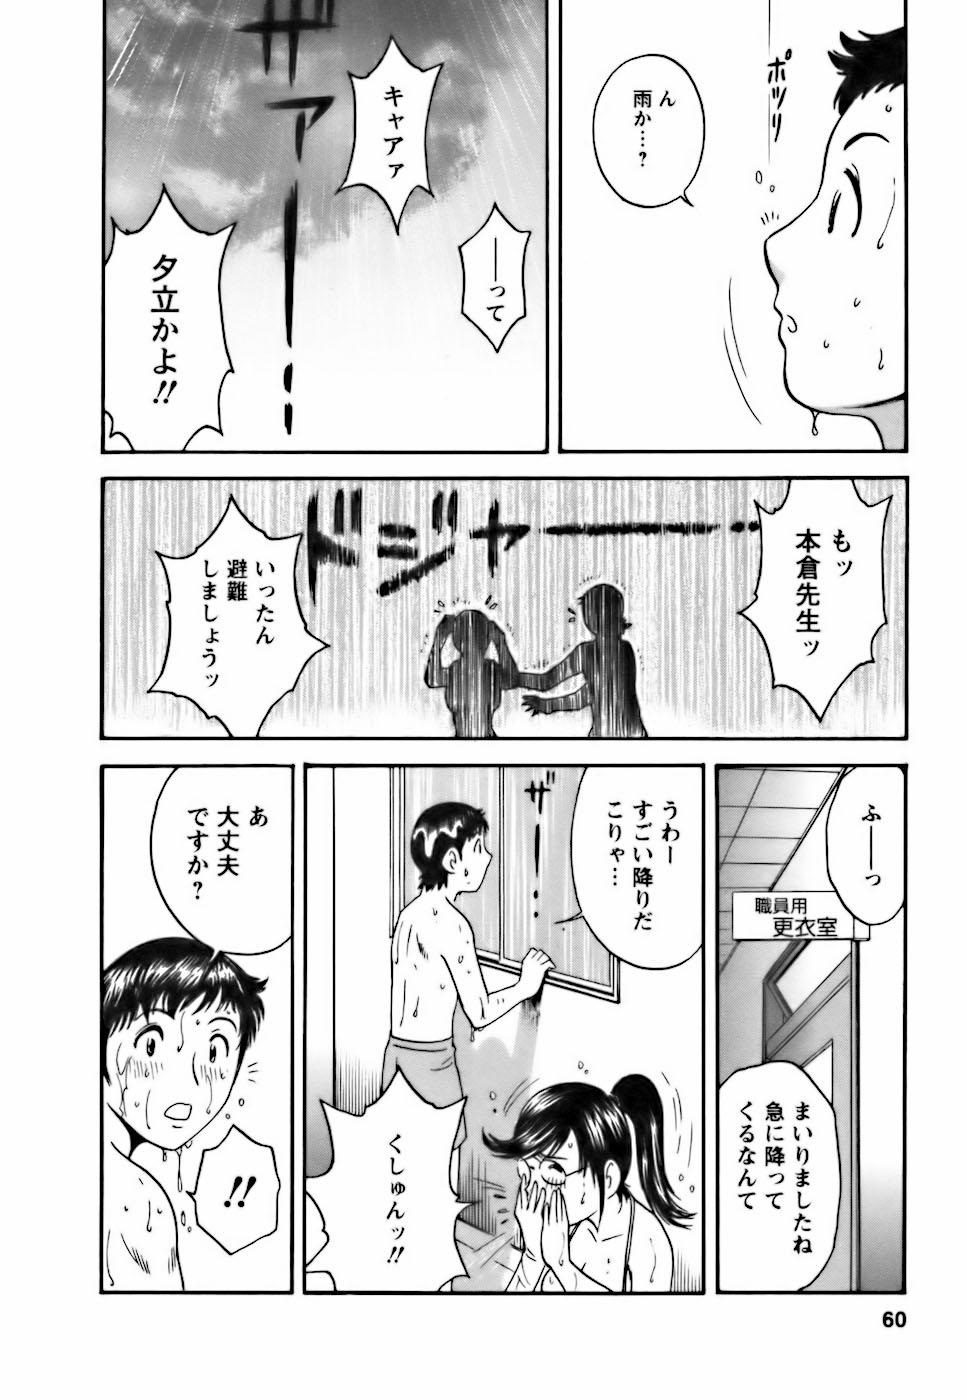 [Hidemaru] Mo-Retsu! Boin Sensei (Boing Boing Teacher) Vol.3 55